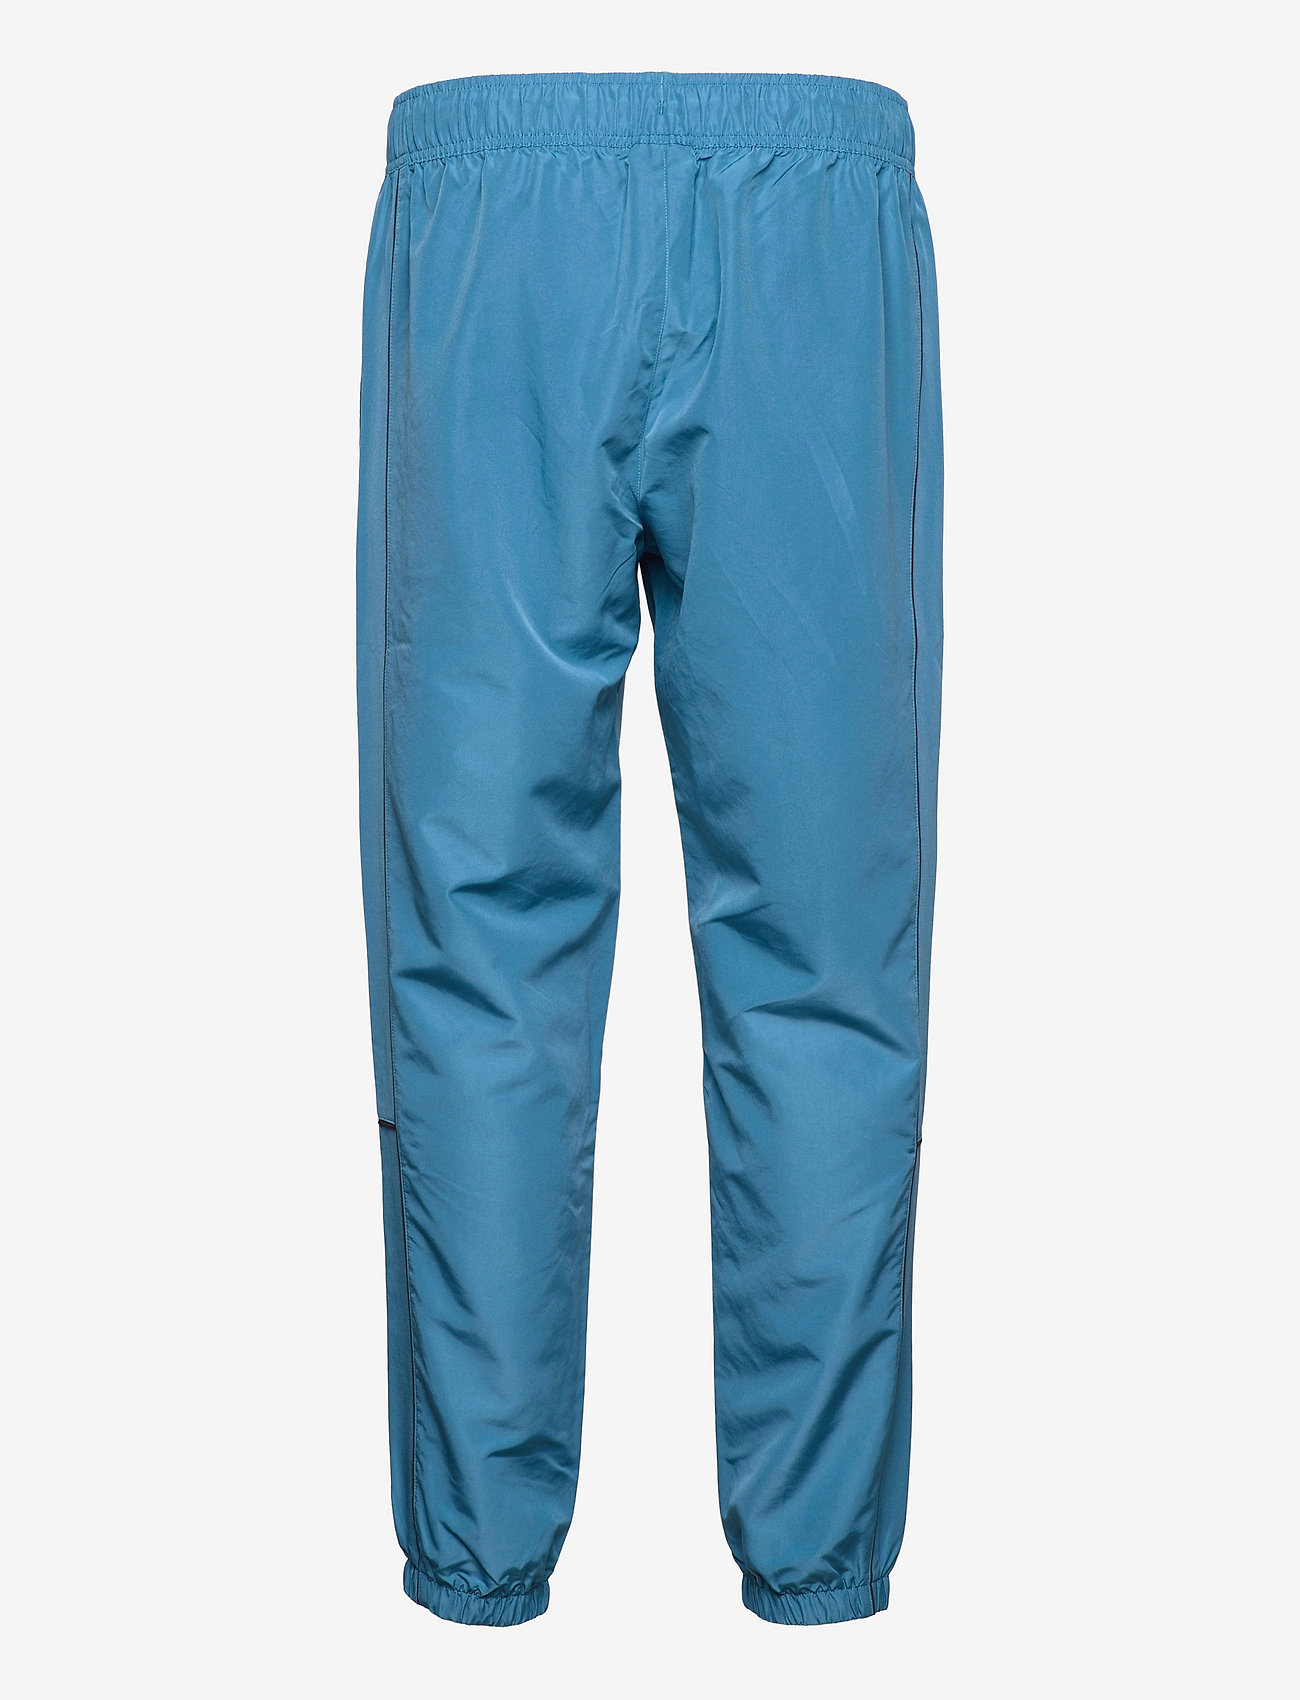 Sale > blue windbreaker pants > in stock